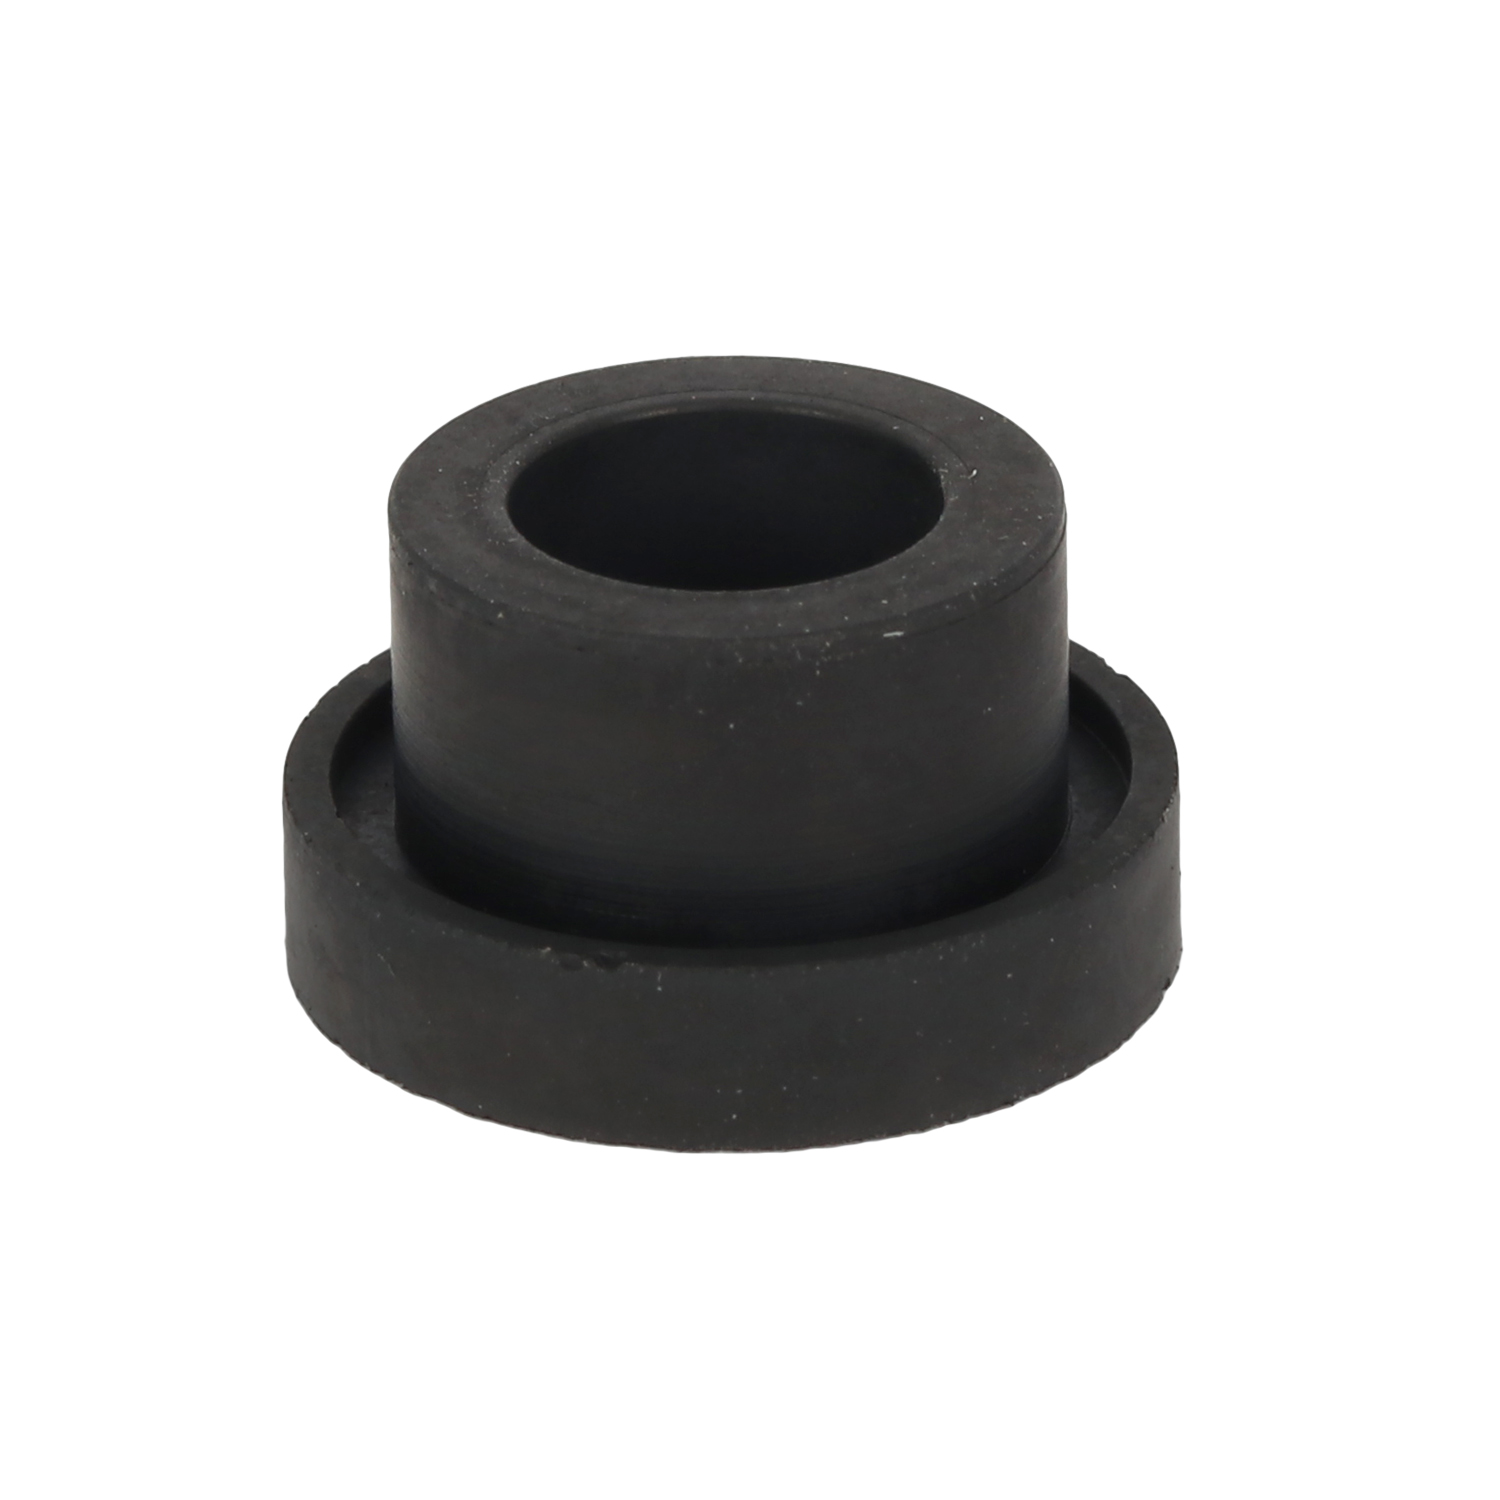 Image of SKS Rubber insert Dunlop/Schrader for valve nipples - 1 piece